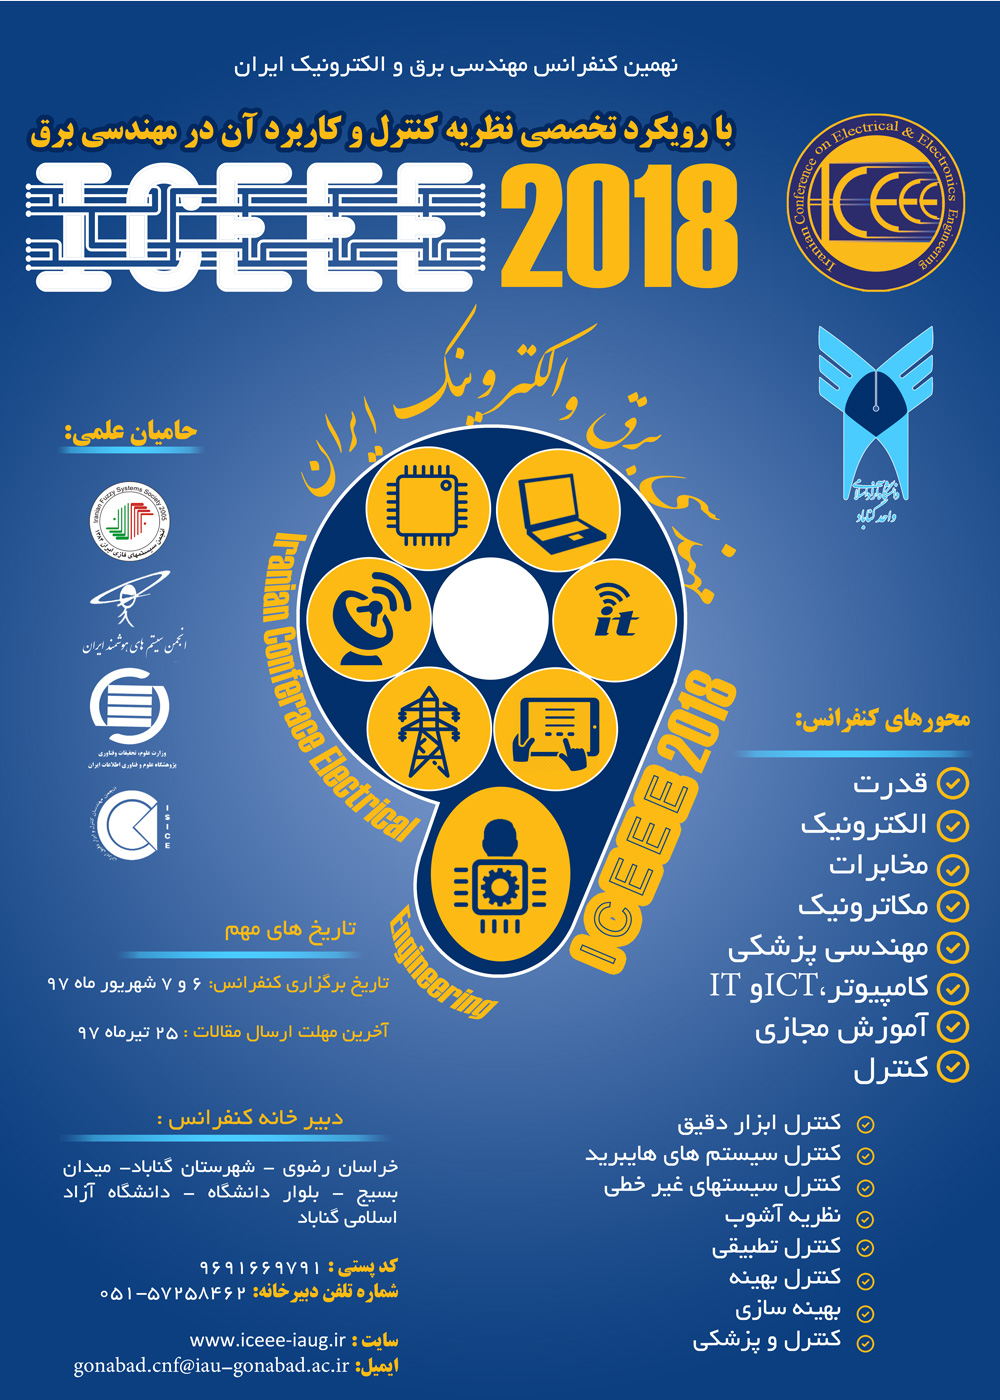 پوستر نهمین کنفرانس مهندسی برق و الکترونیک ایران با رویکرد نظریه کنترل و کاربرد آن در مهندسی برق